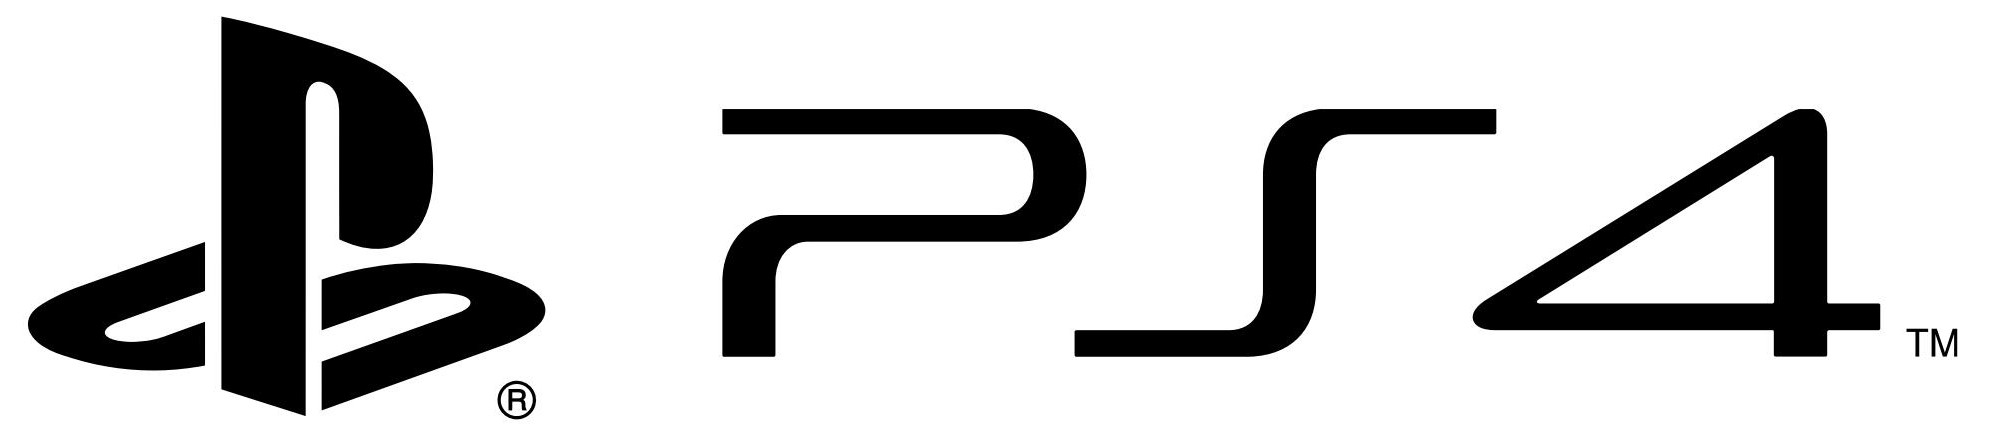 PS4_PlayStation_4_logo.jpg